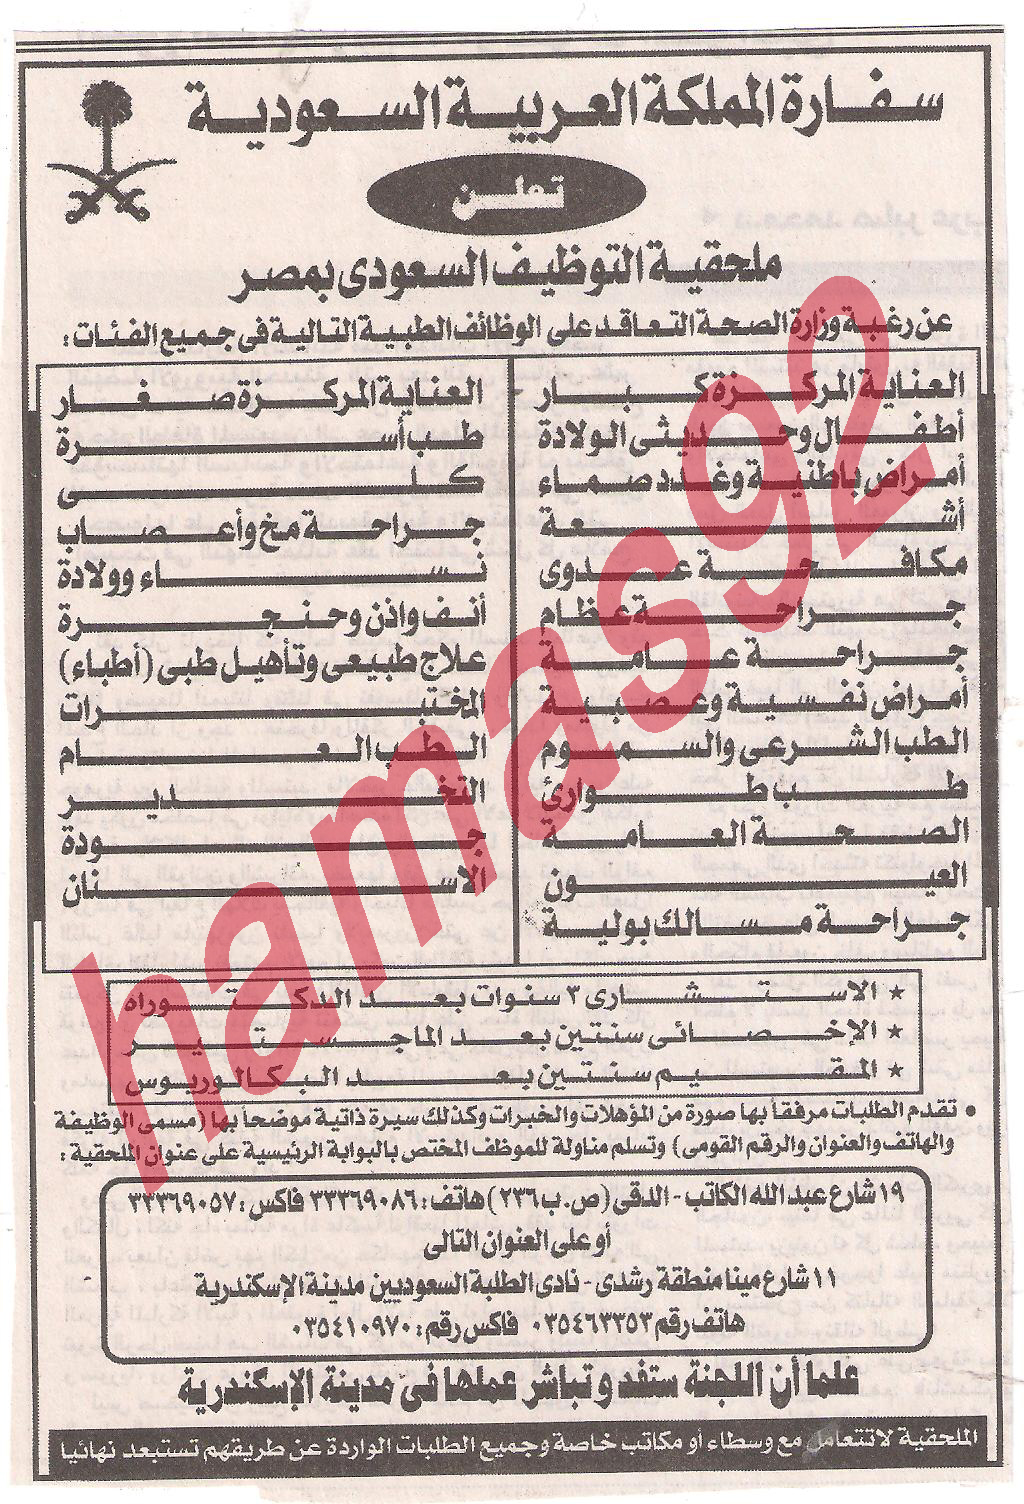 إعلانات وظائف جريدة الاهرام ليوم الاربعاء 28 سبتمبر 2011  Picture+003